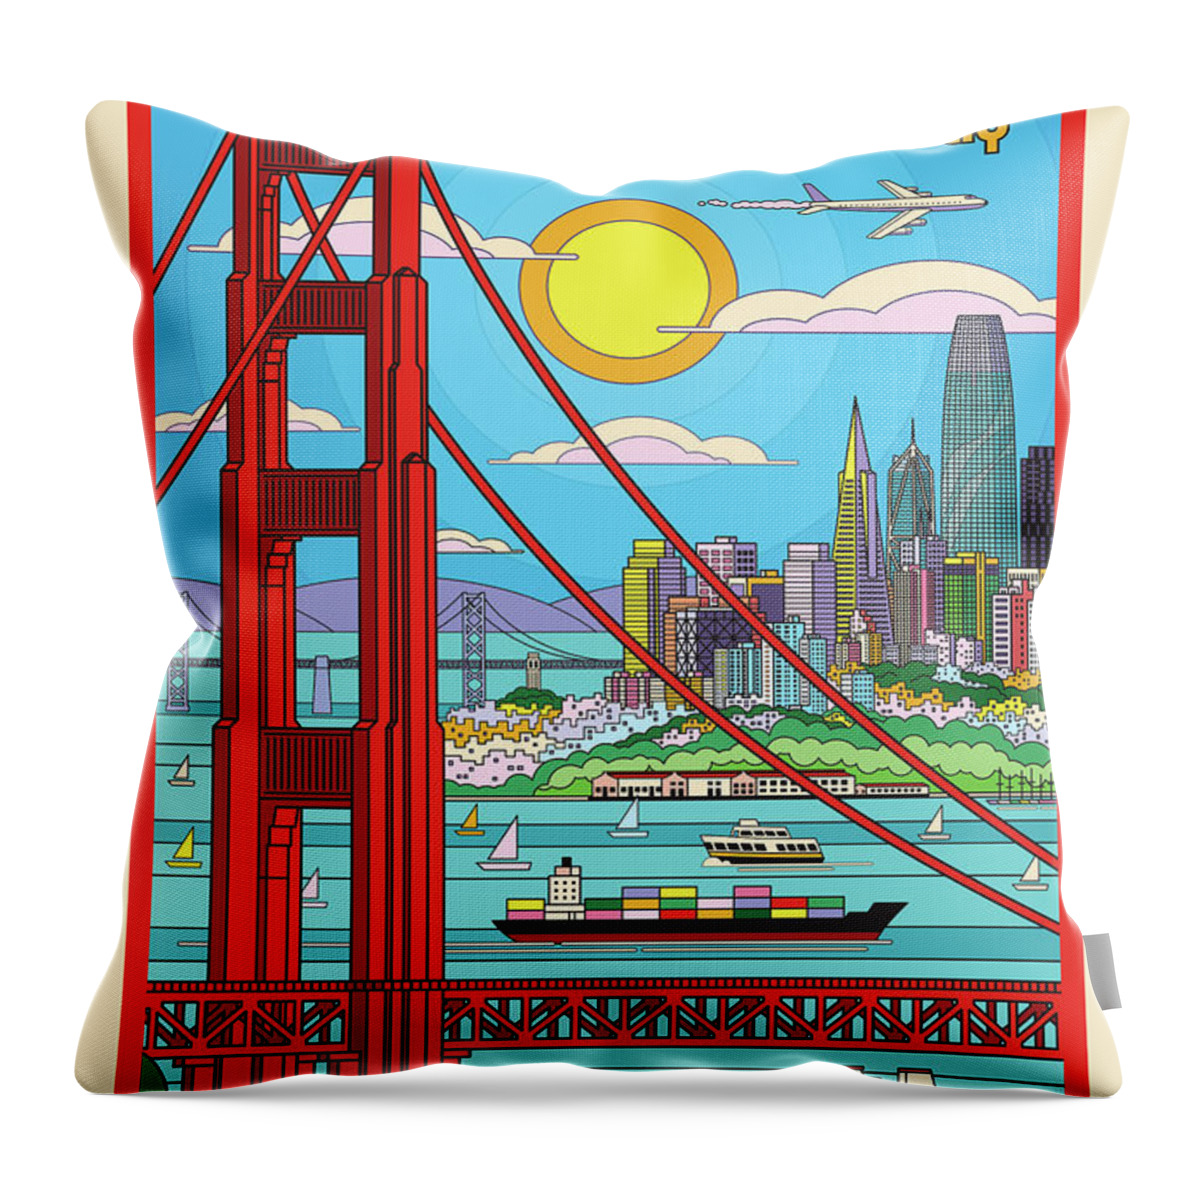 #faatoppicks Throw Pillow featuring the digital art San Francisco Pop Art Travel Poster by Jim Zahniser